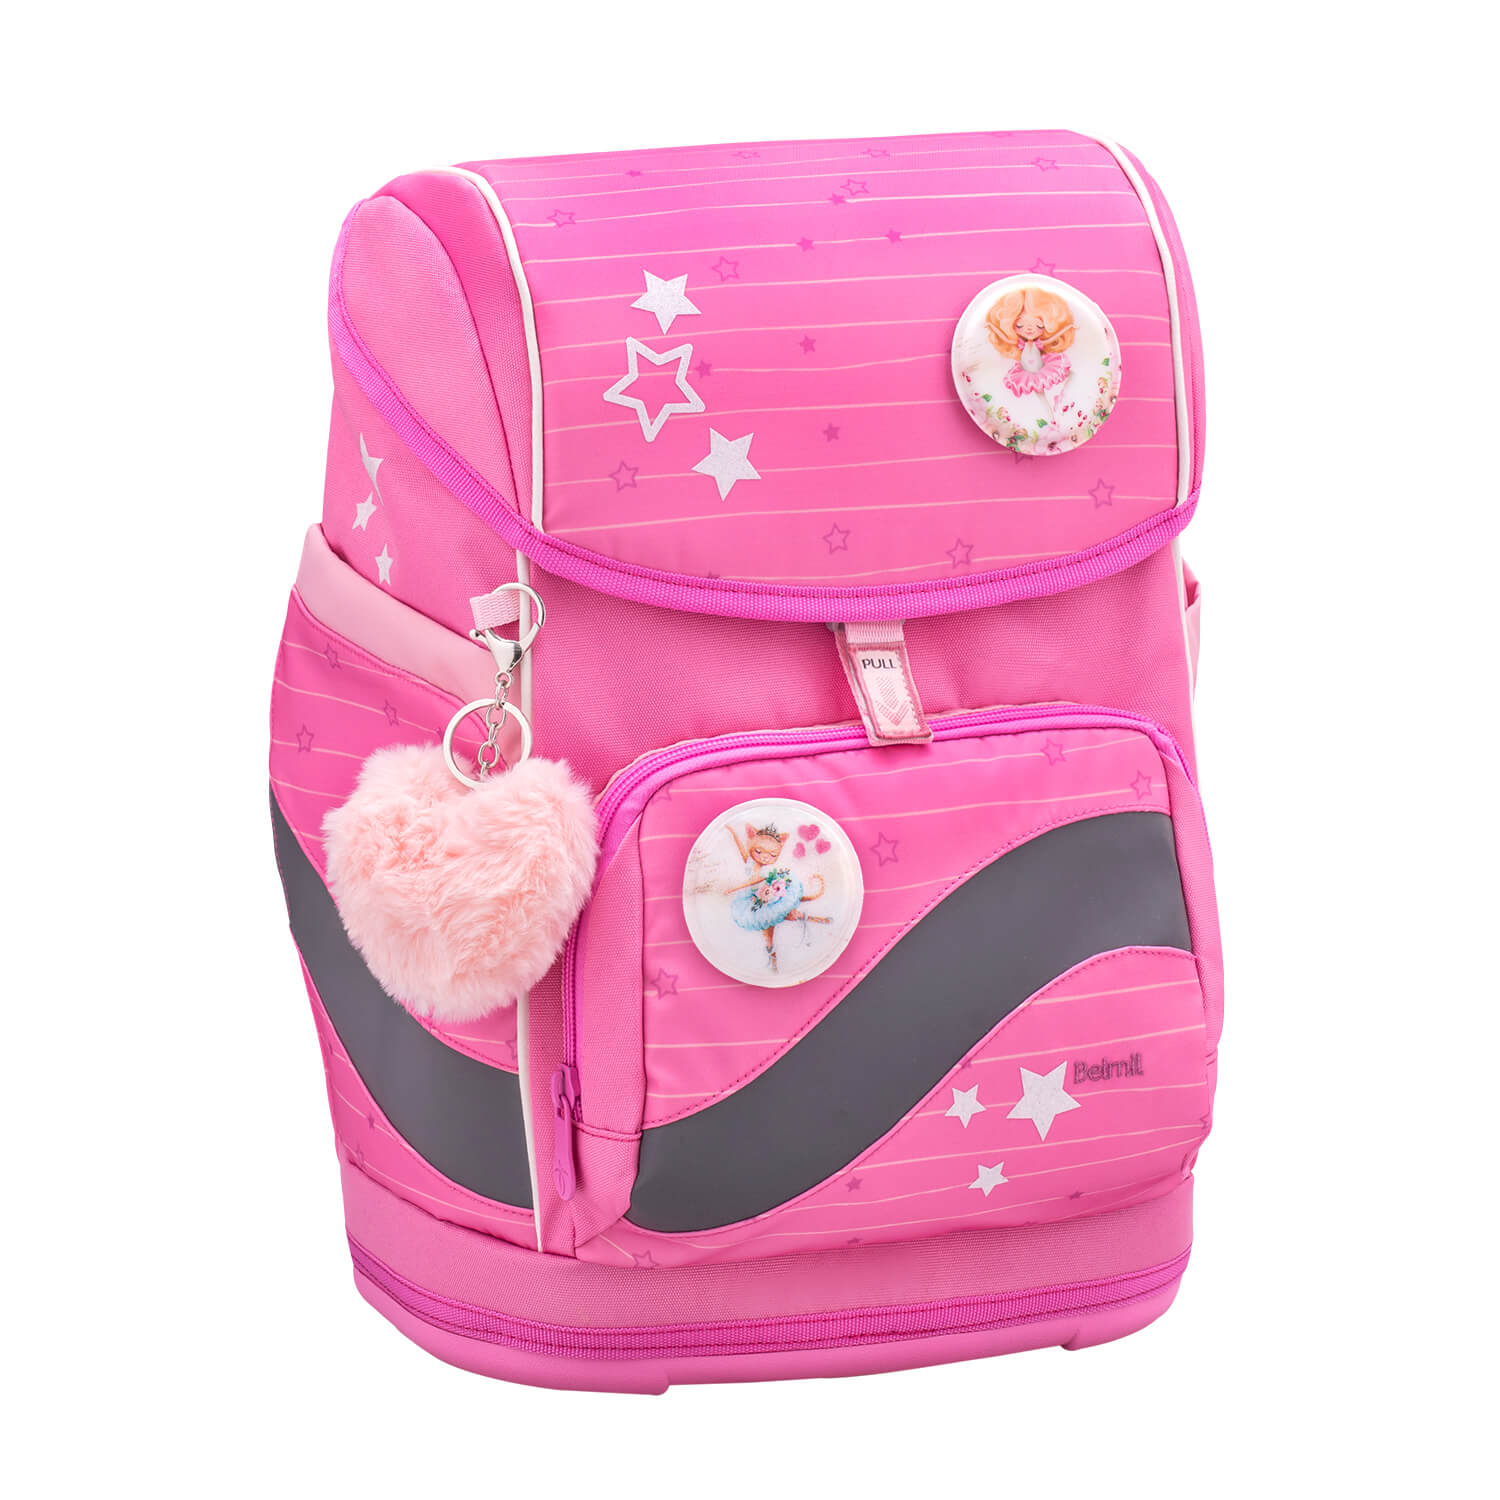 Smarty Plus Candy Schoolbag set 5pcs.